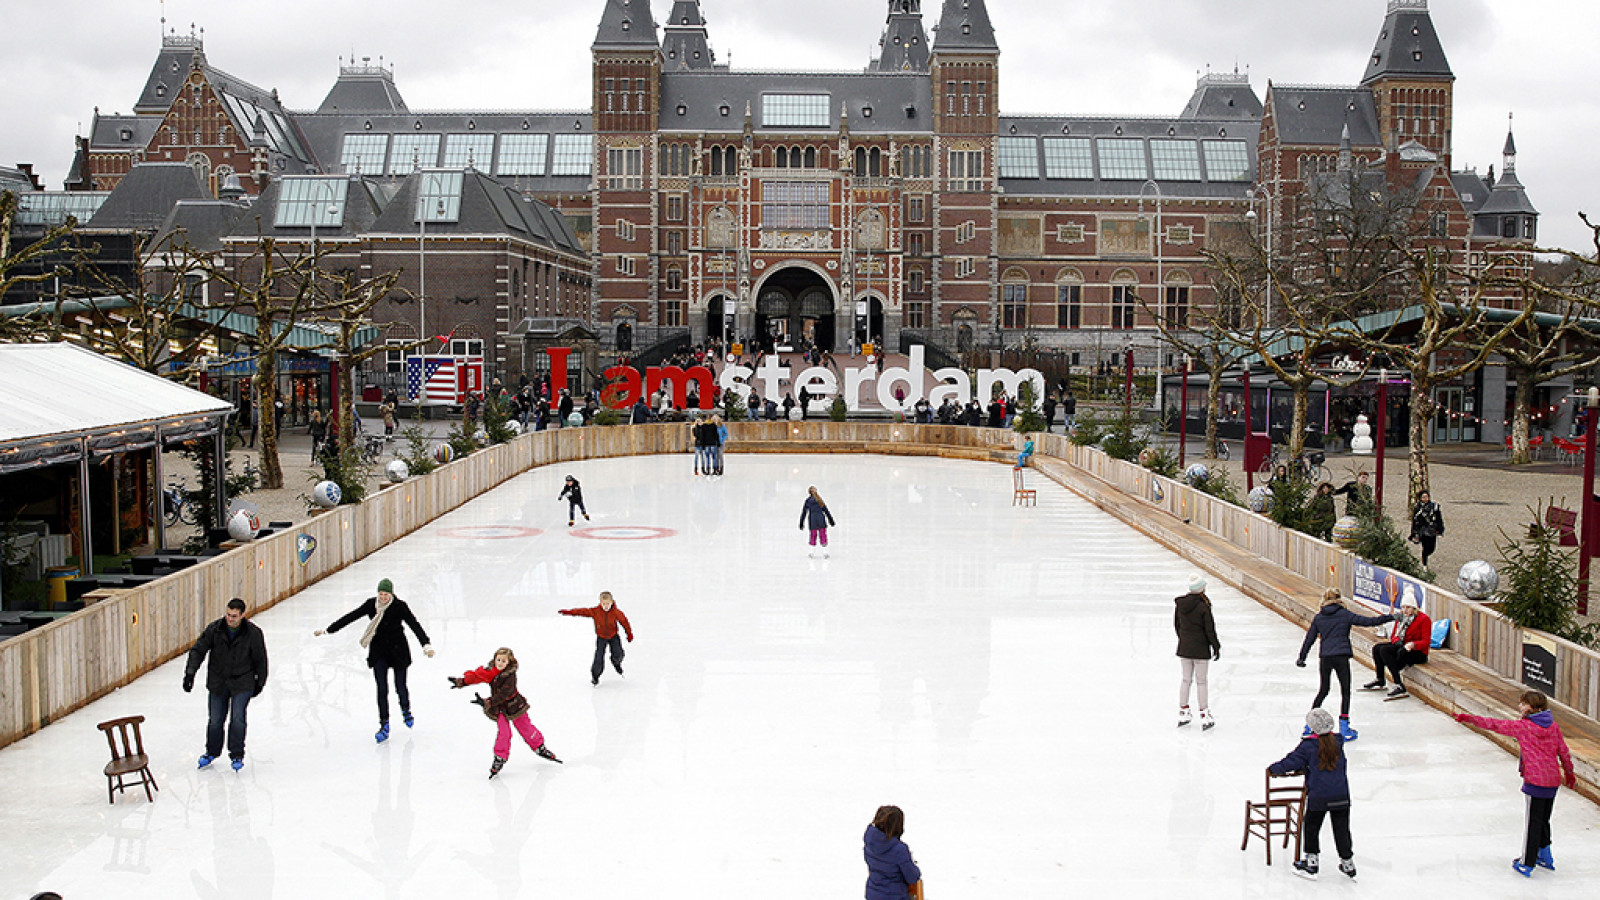 expositie magneet Ver weg In beeld: schaatsbaan Museumplein Amsterdam - NH Nieuws